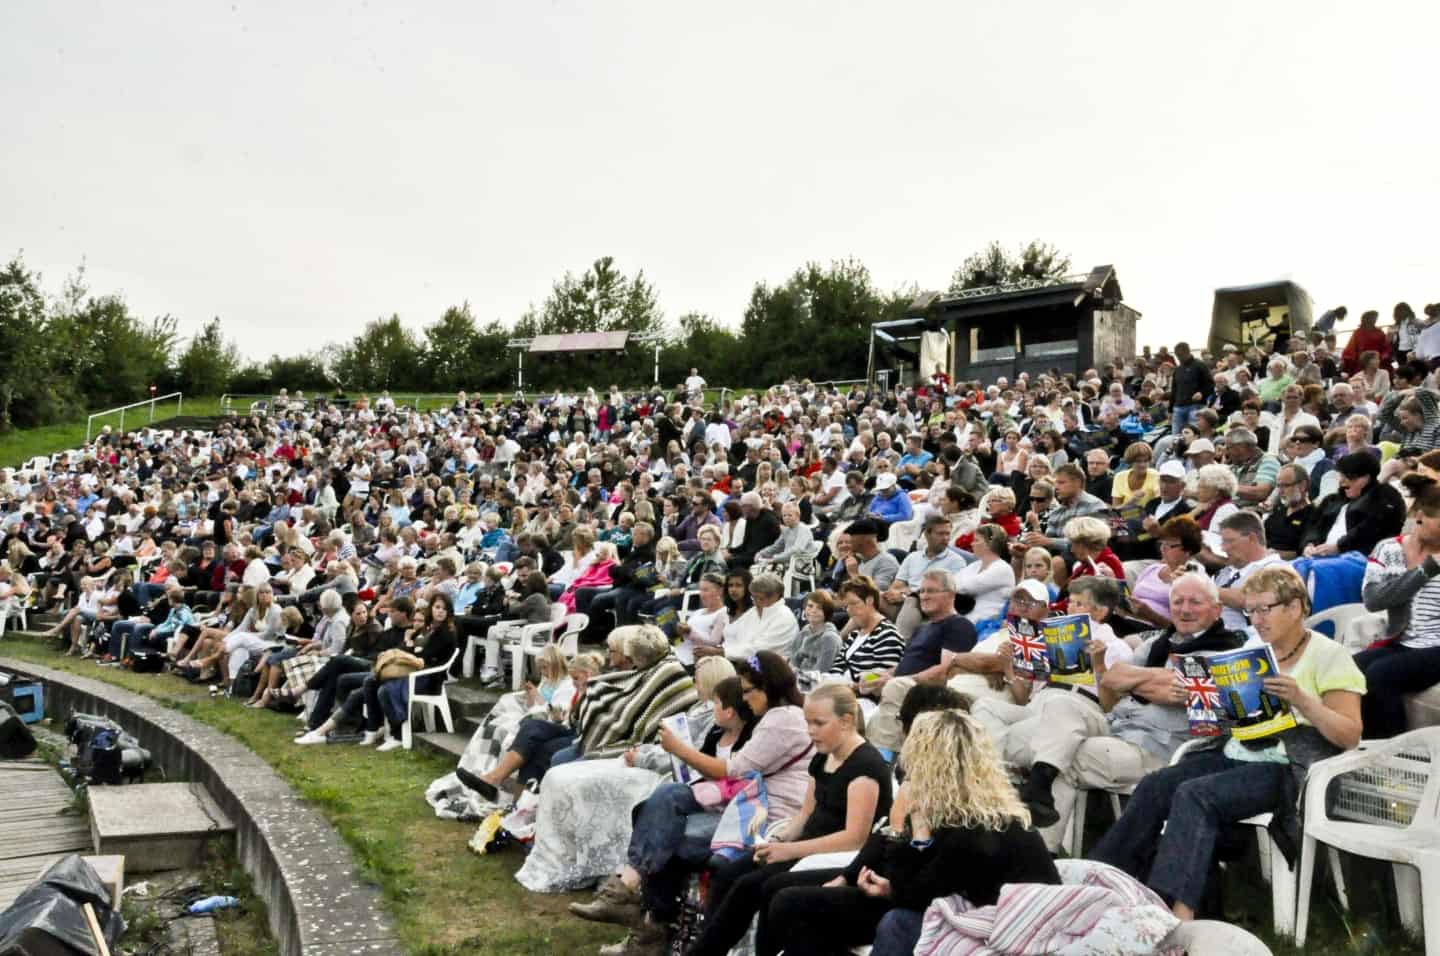 Sommerens festspil er aflyst: Nu teater i stedet med berømt Queen-musical | jv.dk